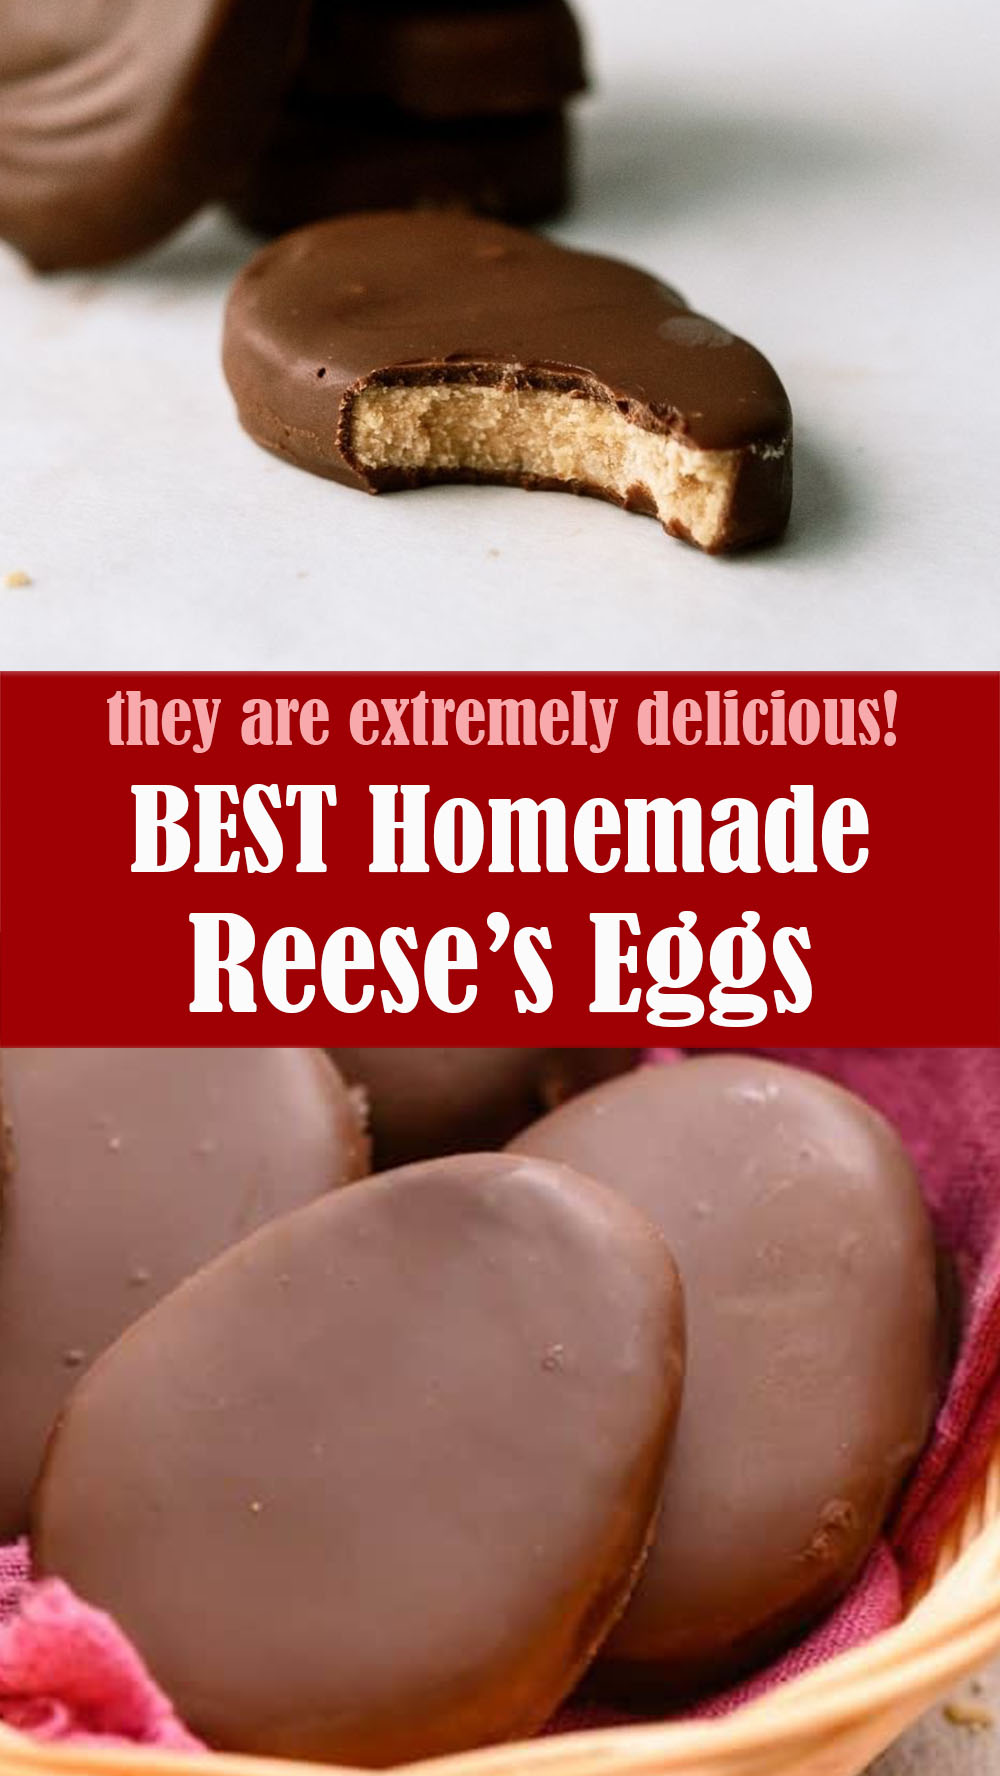 Homemade Reese’s Eggs